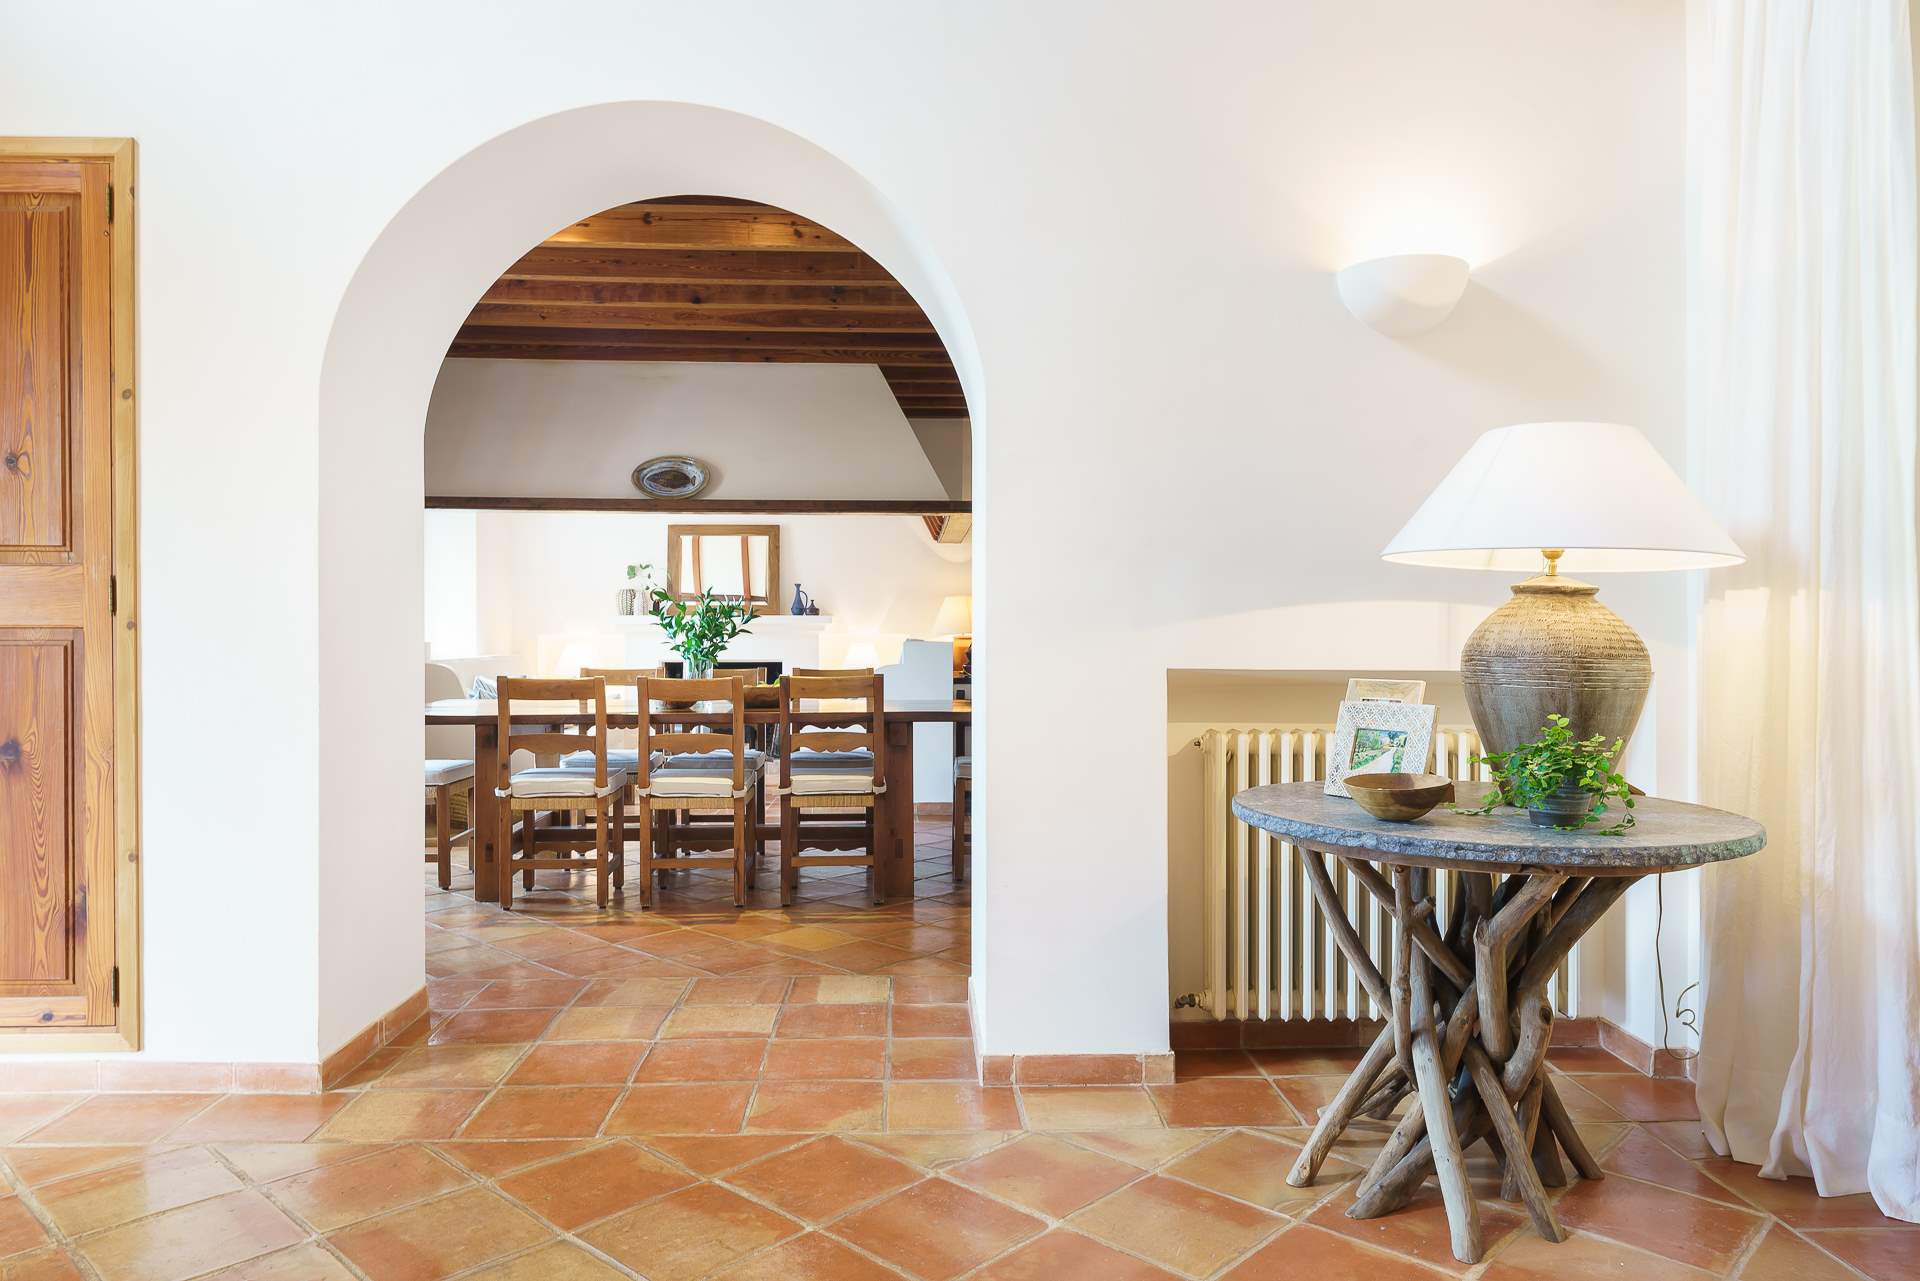 Sa Tanca, 4 Bedroom Rental, 4 bedroom villa in Soller & Deia, Majorca Photo #19